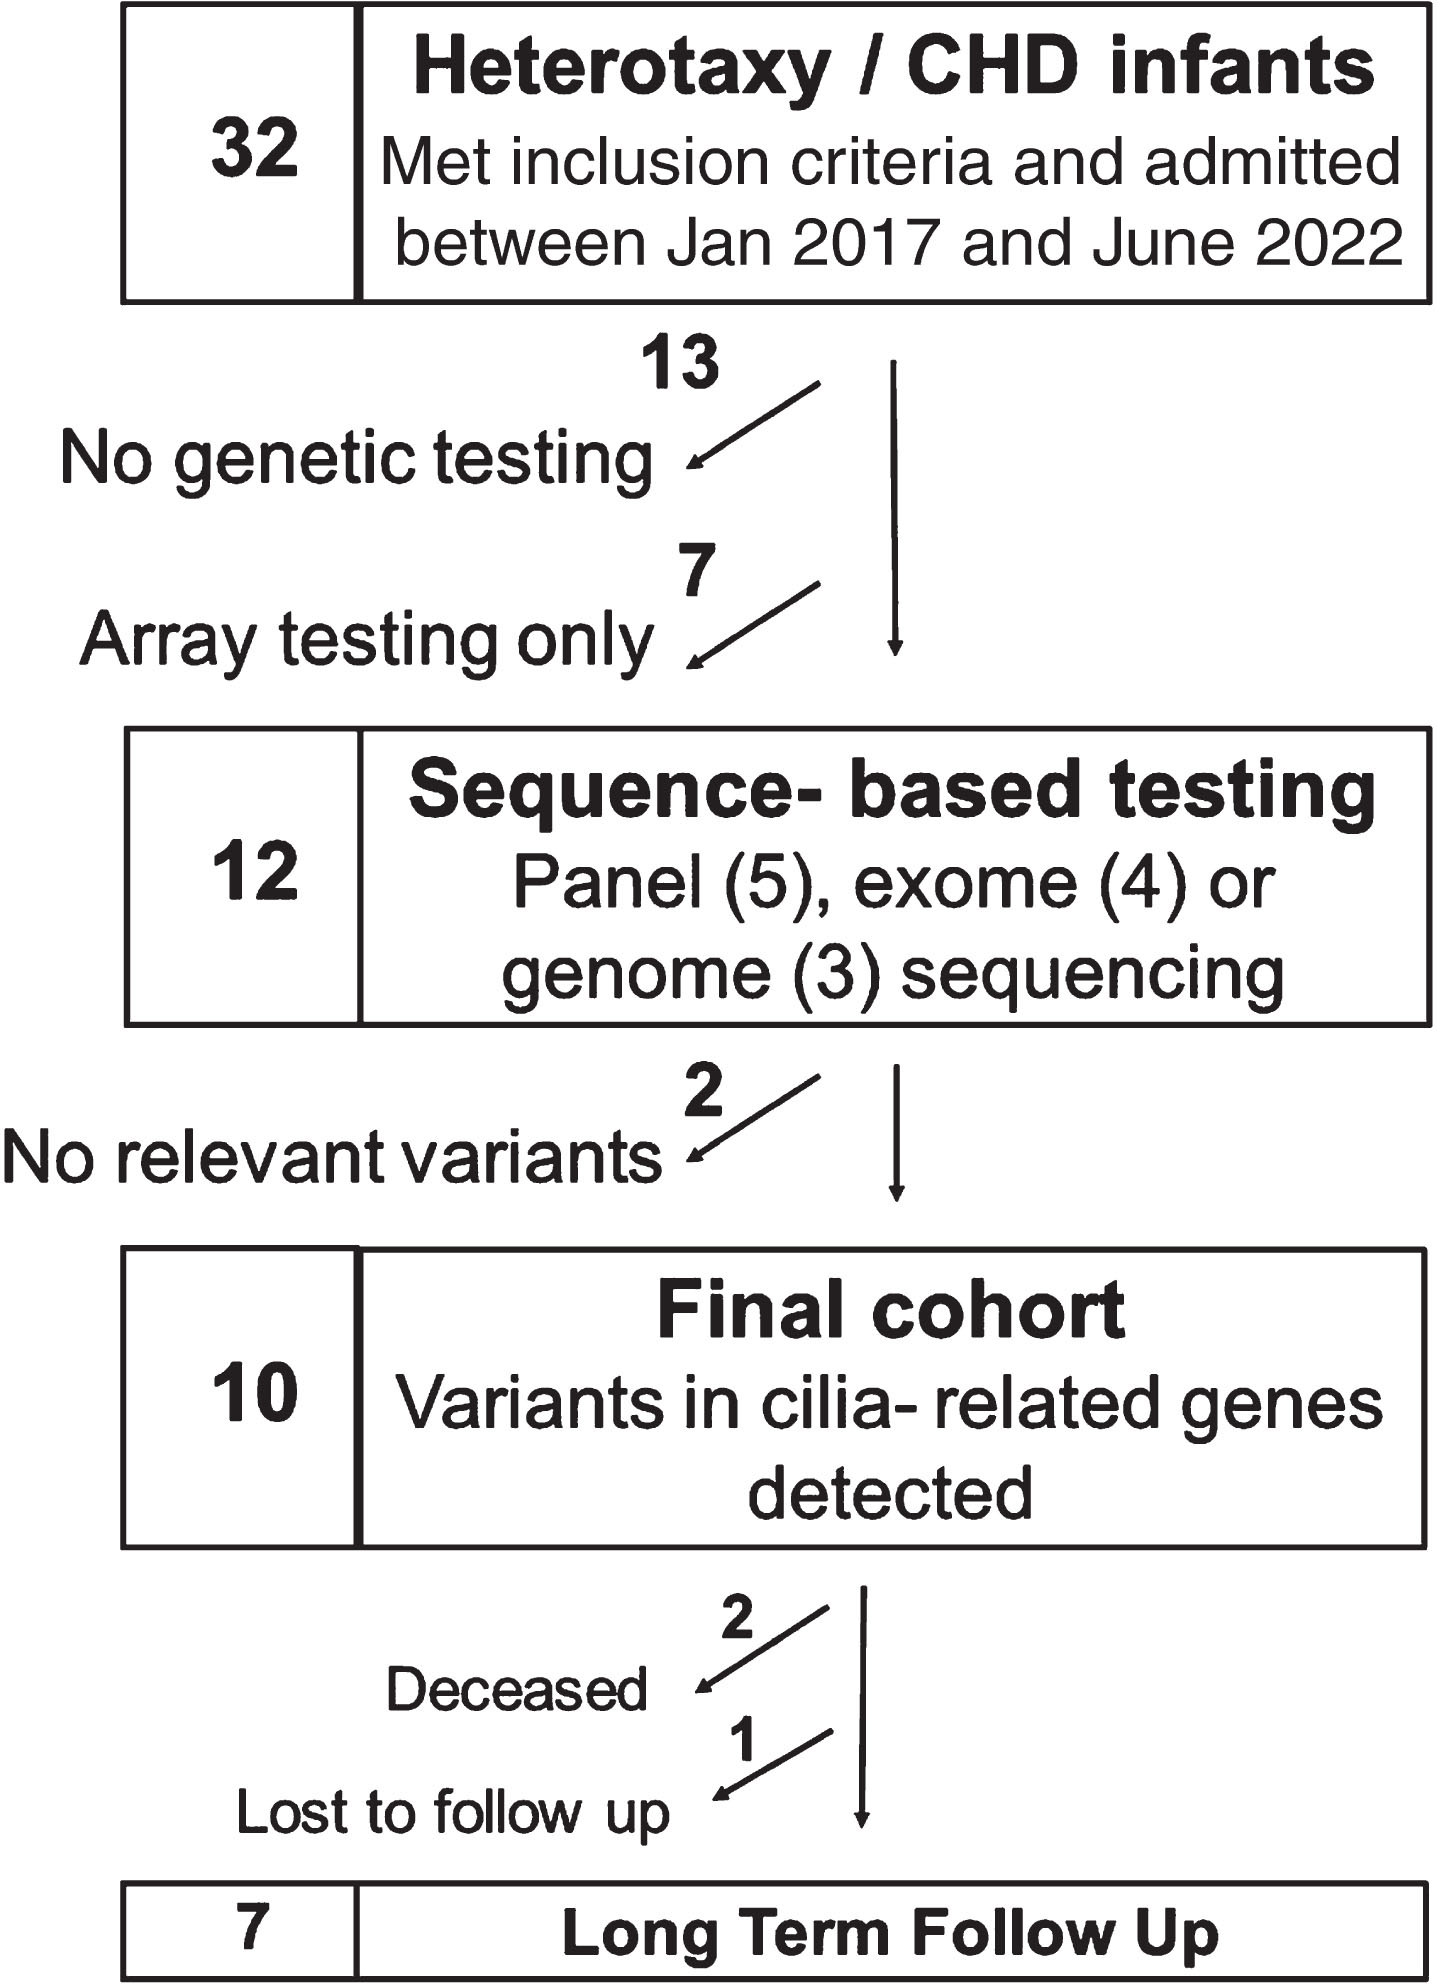 Consort diagram of patients’ genetic testing.